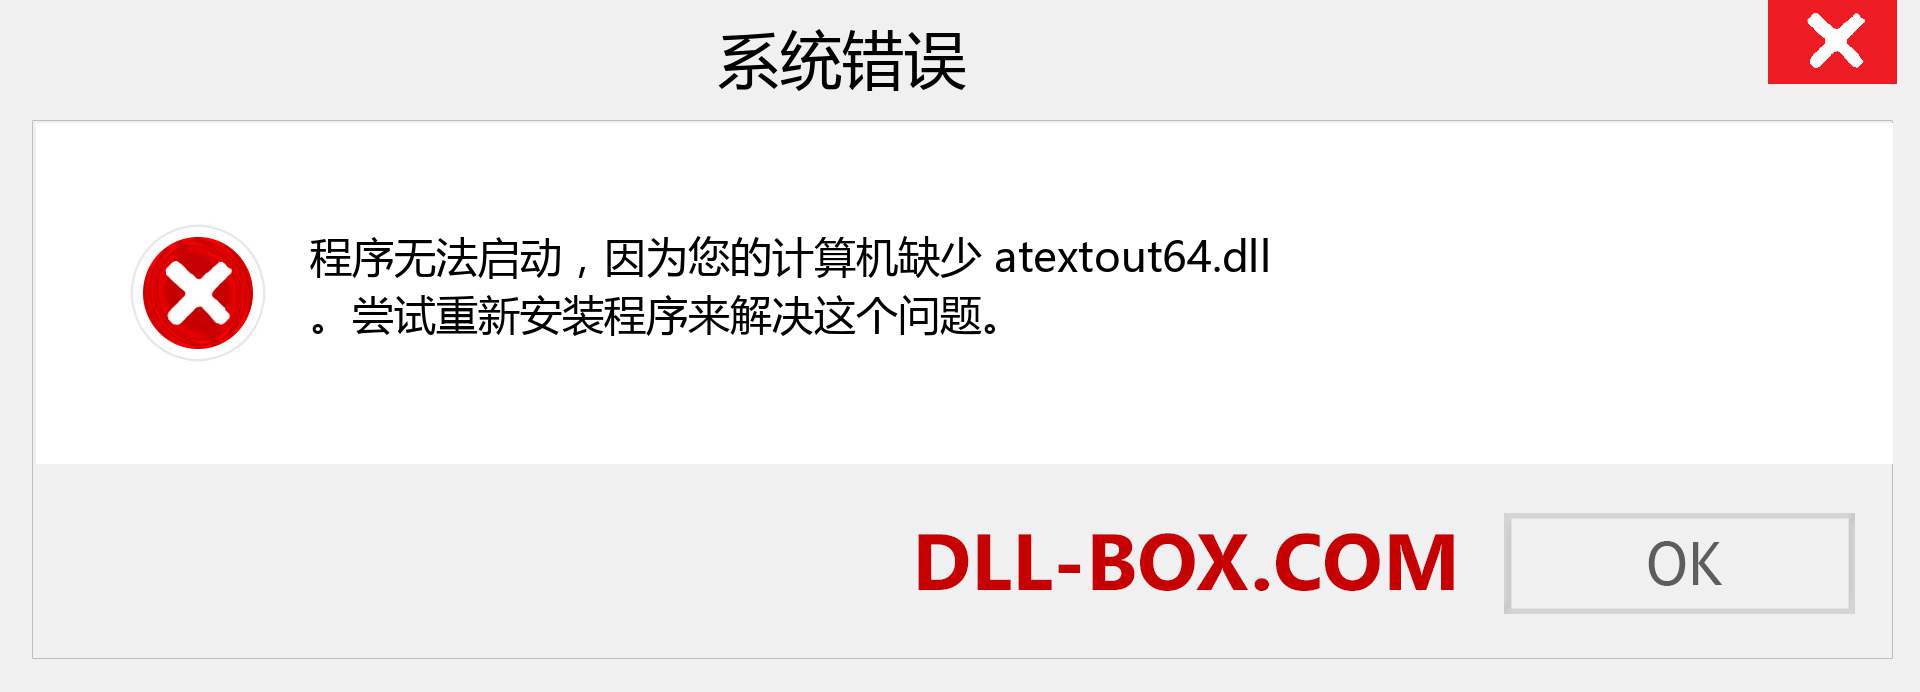 atextout64.dll 文件丢失？。 适用于 Windows 7、8、10 的下载 - 修复 Windows、照片、图像上的 atextout64 dll 丢失错误